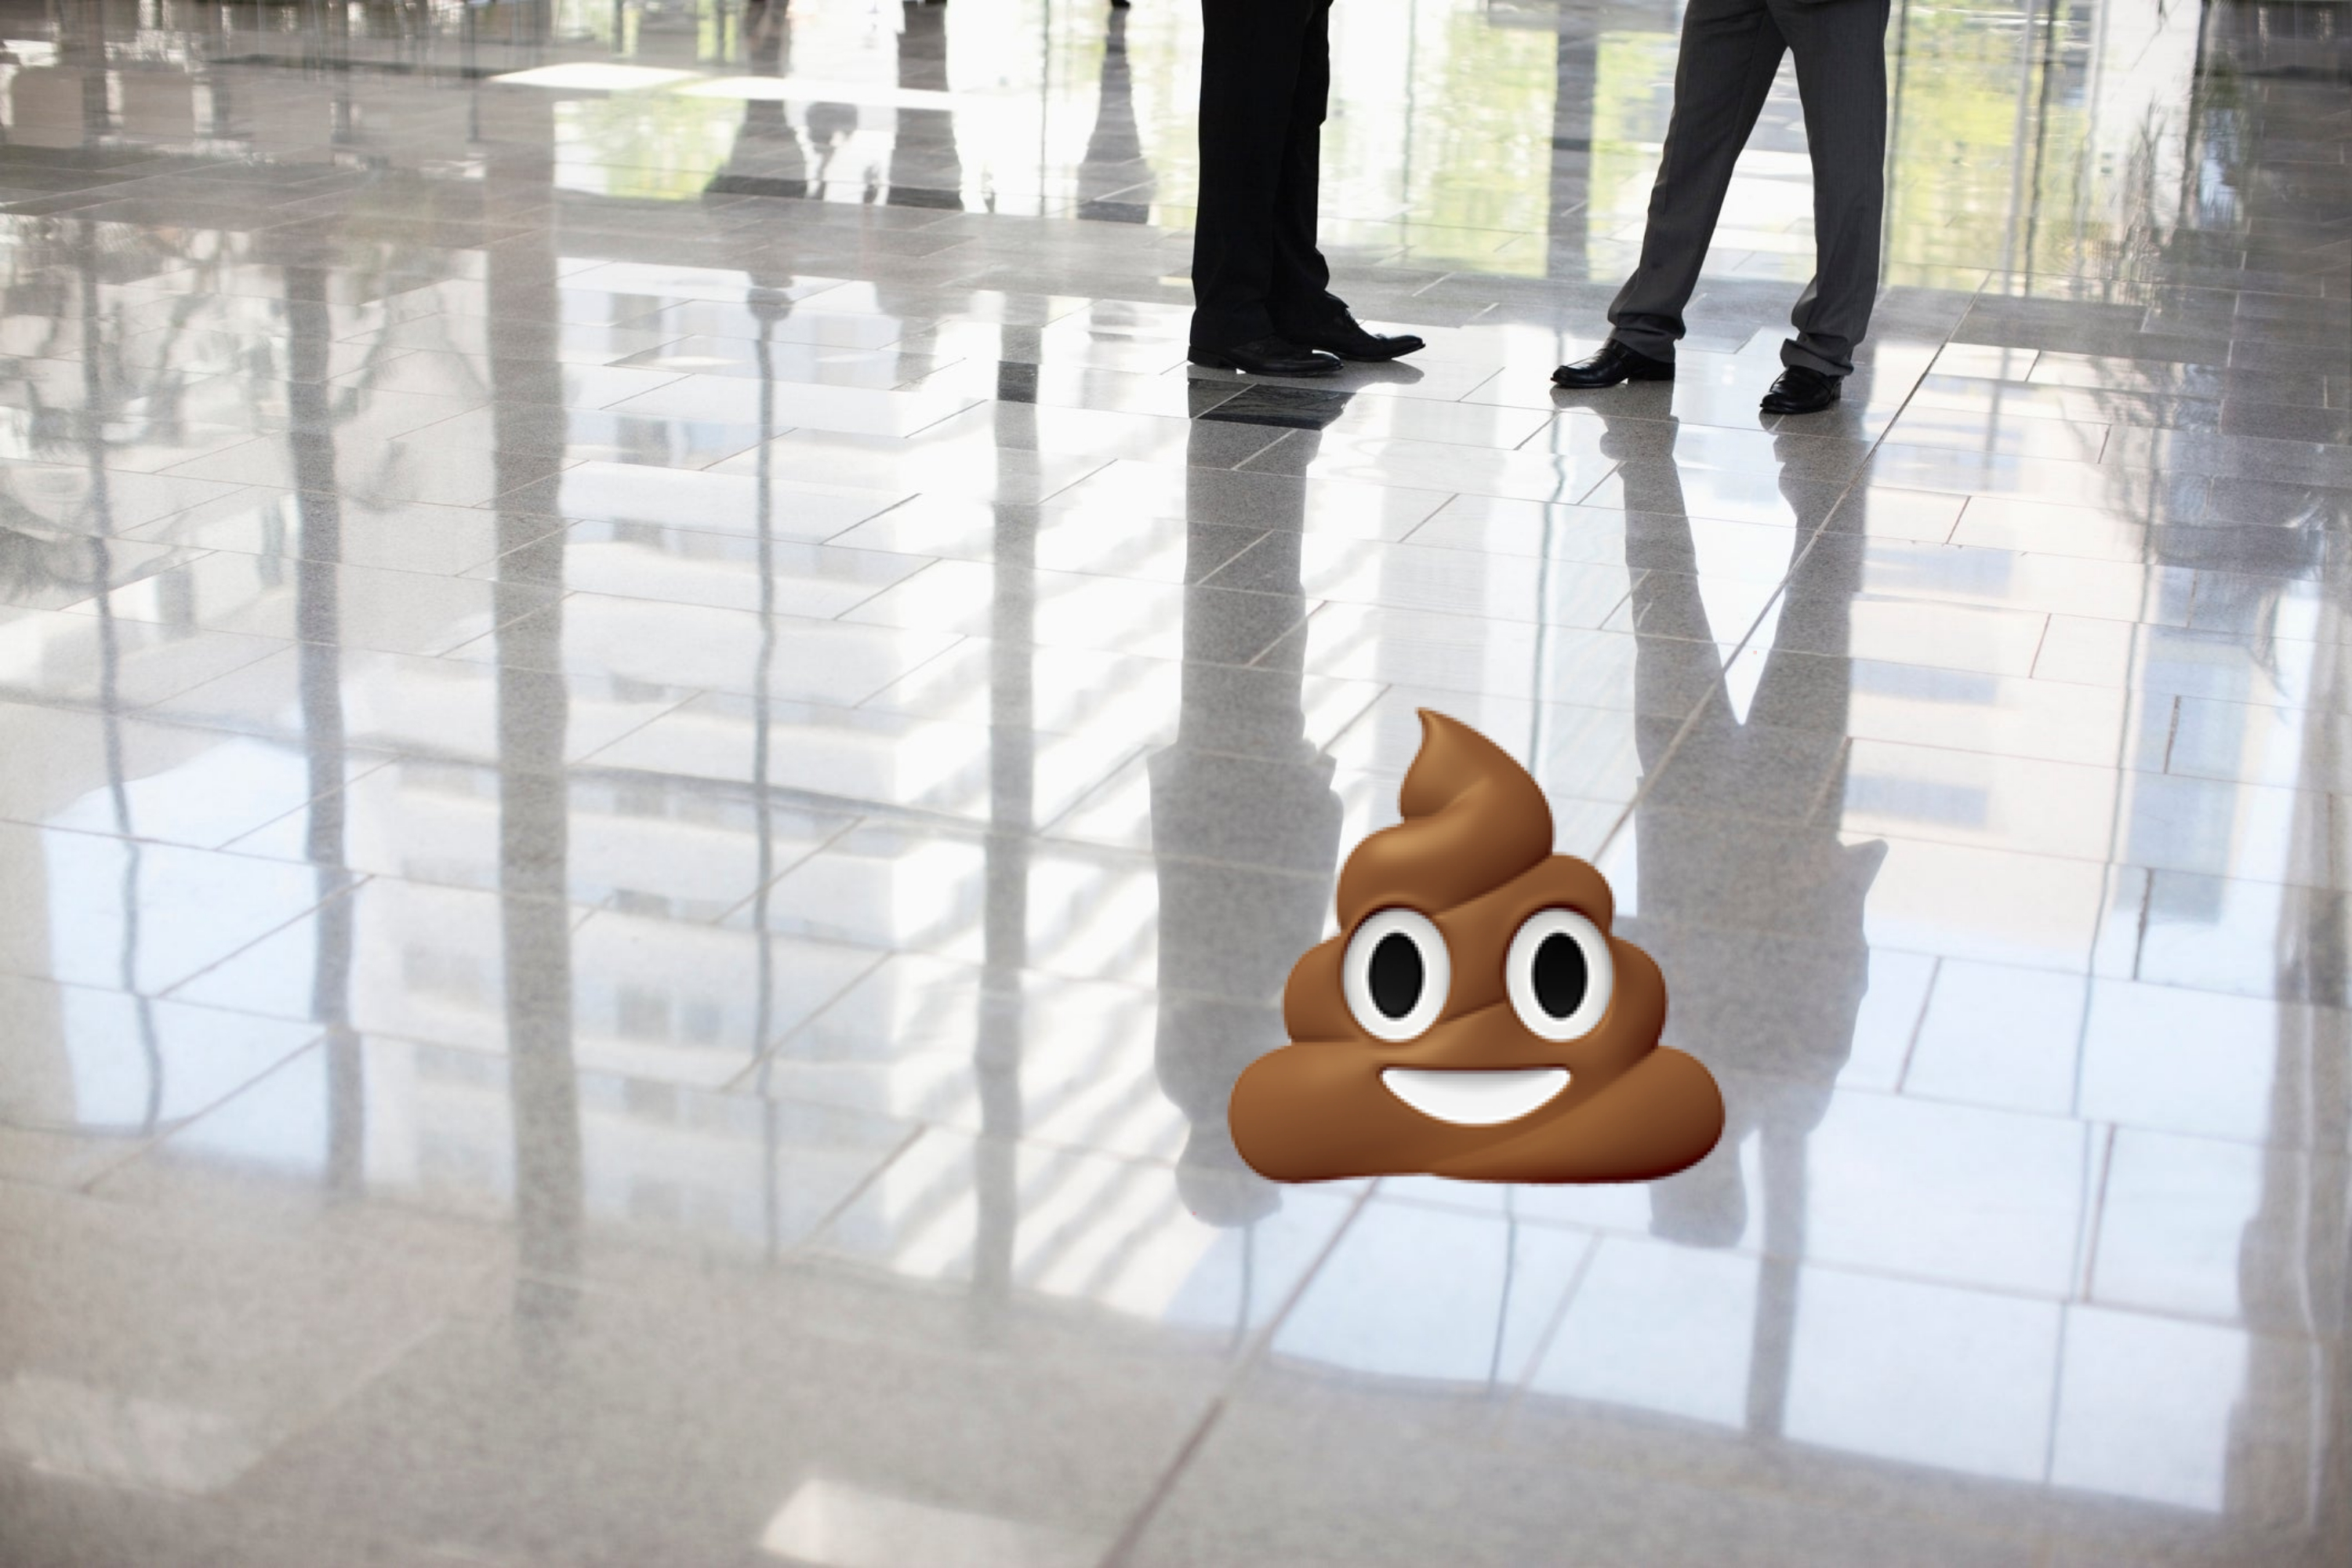 A poop emoji on the floor